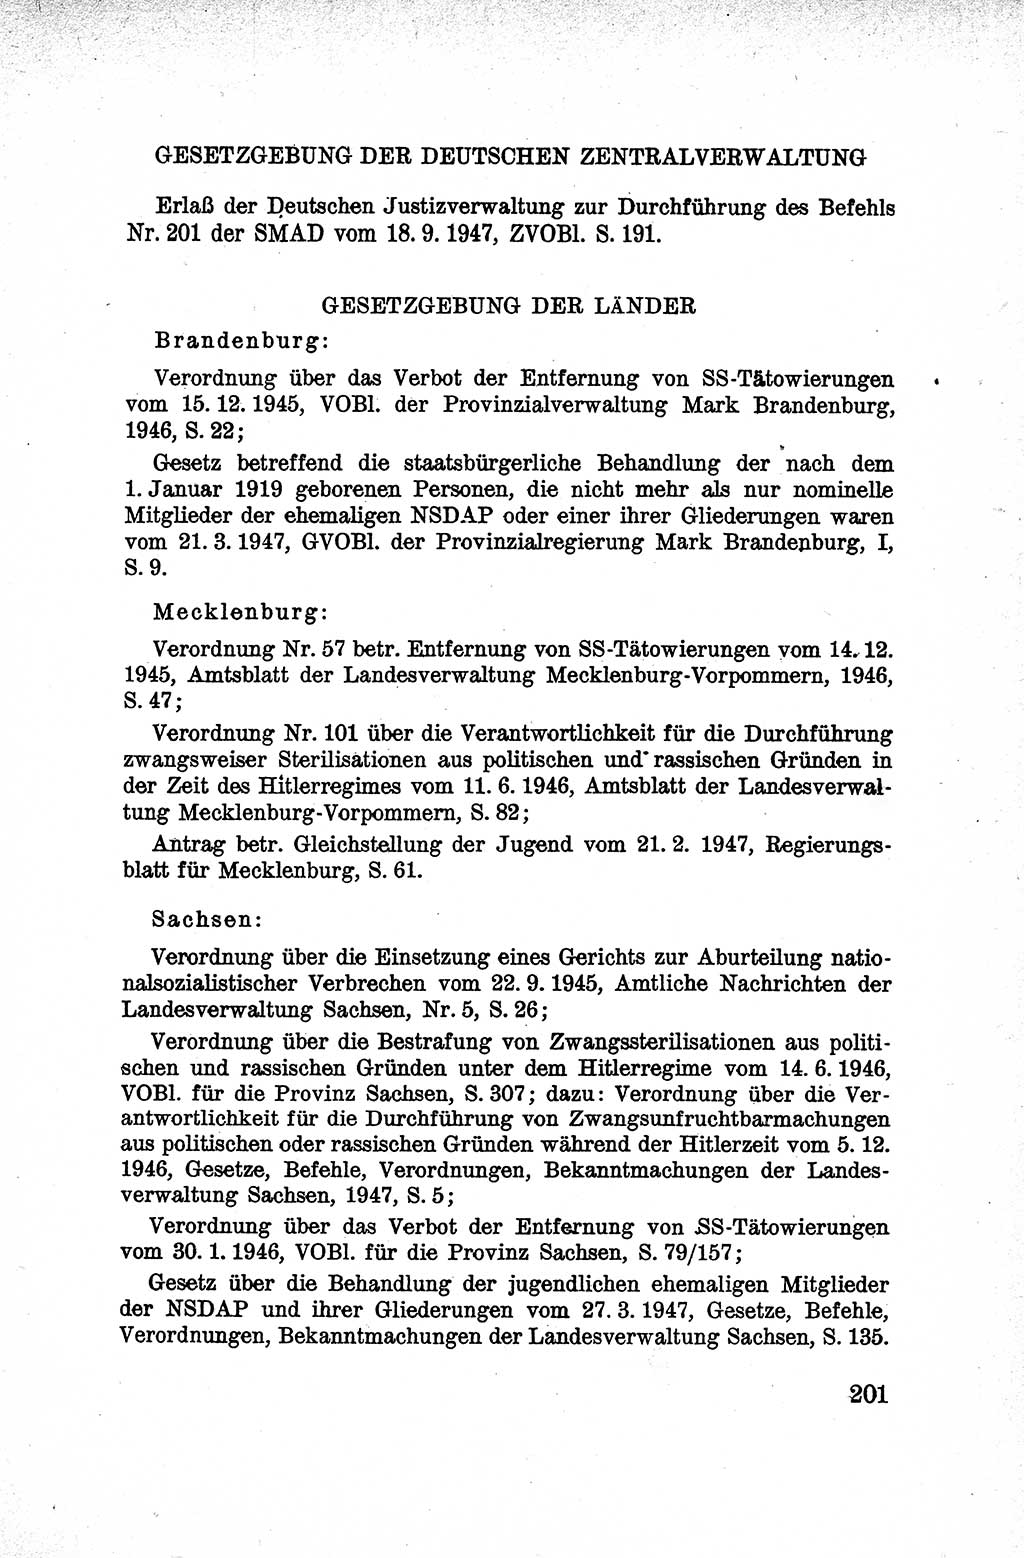 Lehrbuch des Strafrechts der Deutschen Demokratischen Republik (DDR), Allgemeiner Teil 1959, Seite 201 (Lb. Strafr. DDR AT 1959, S. 201)